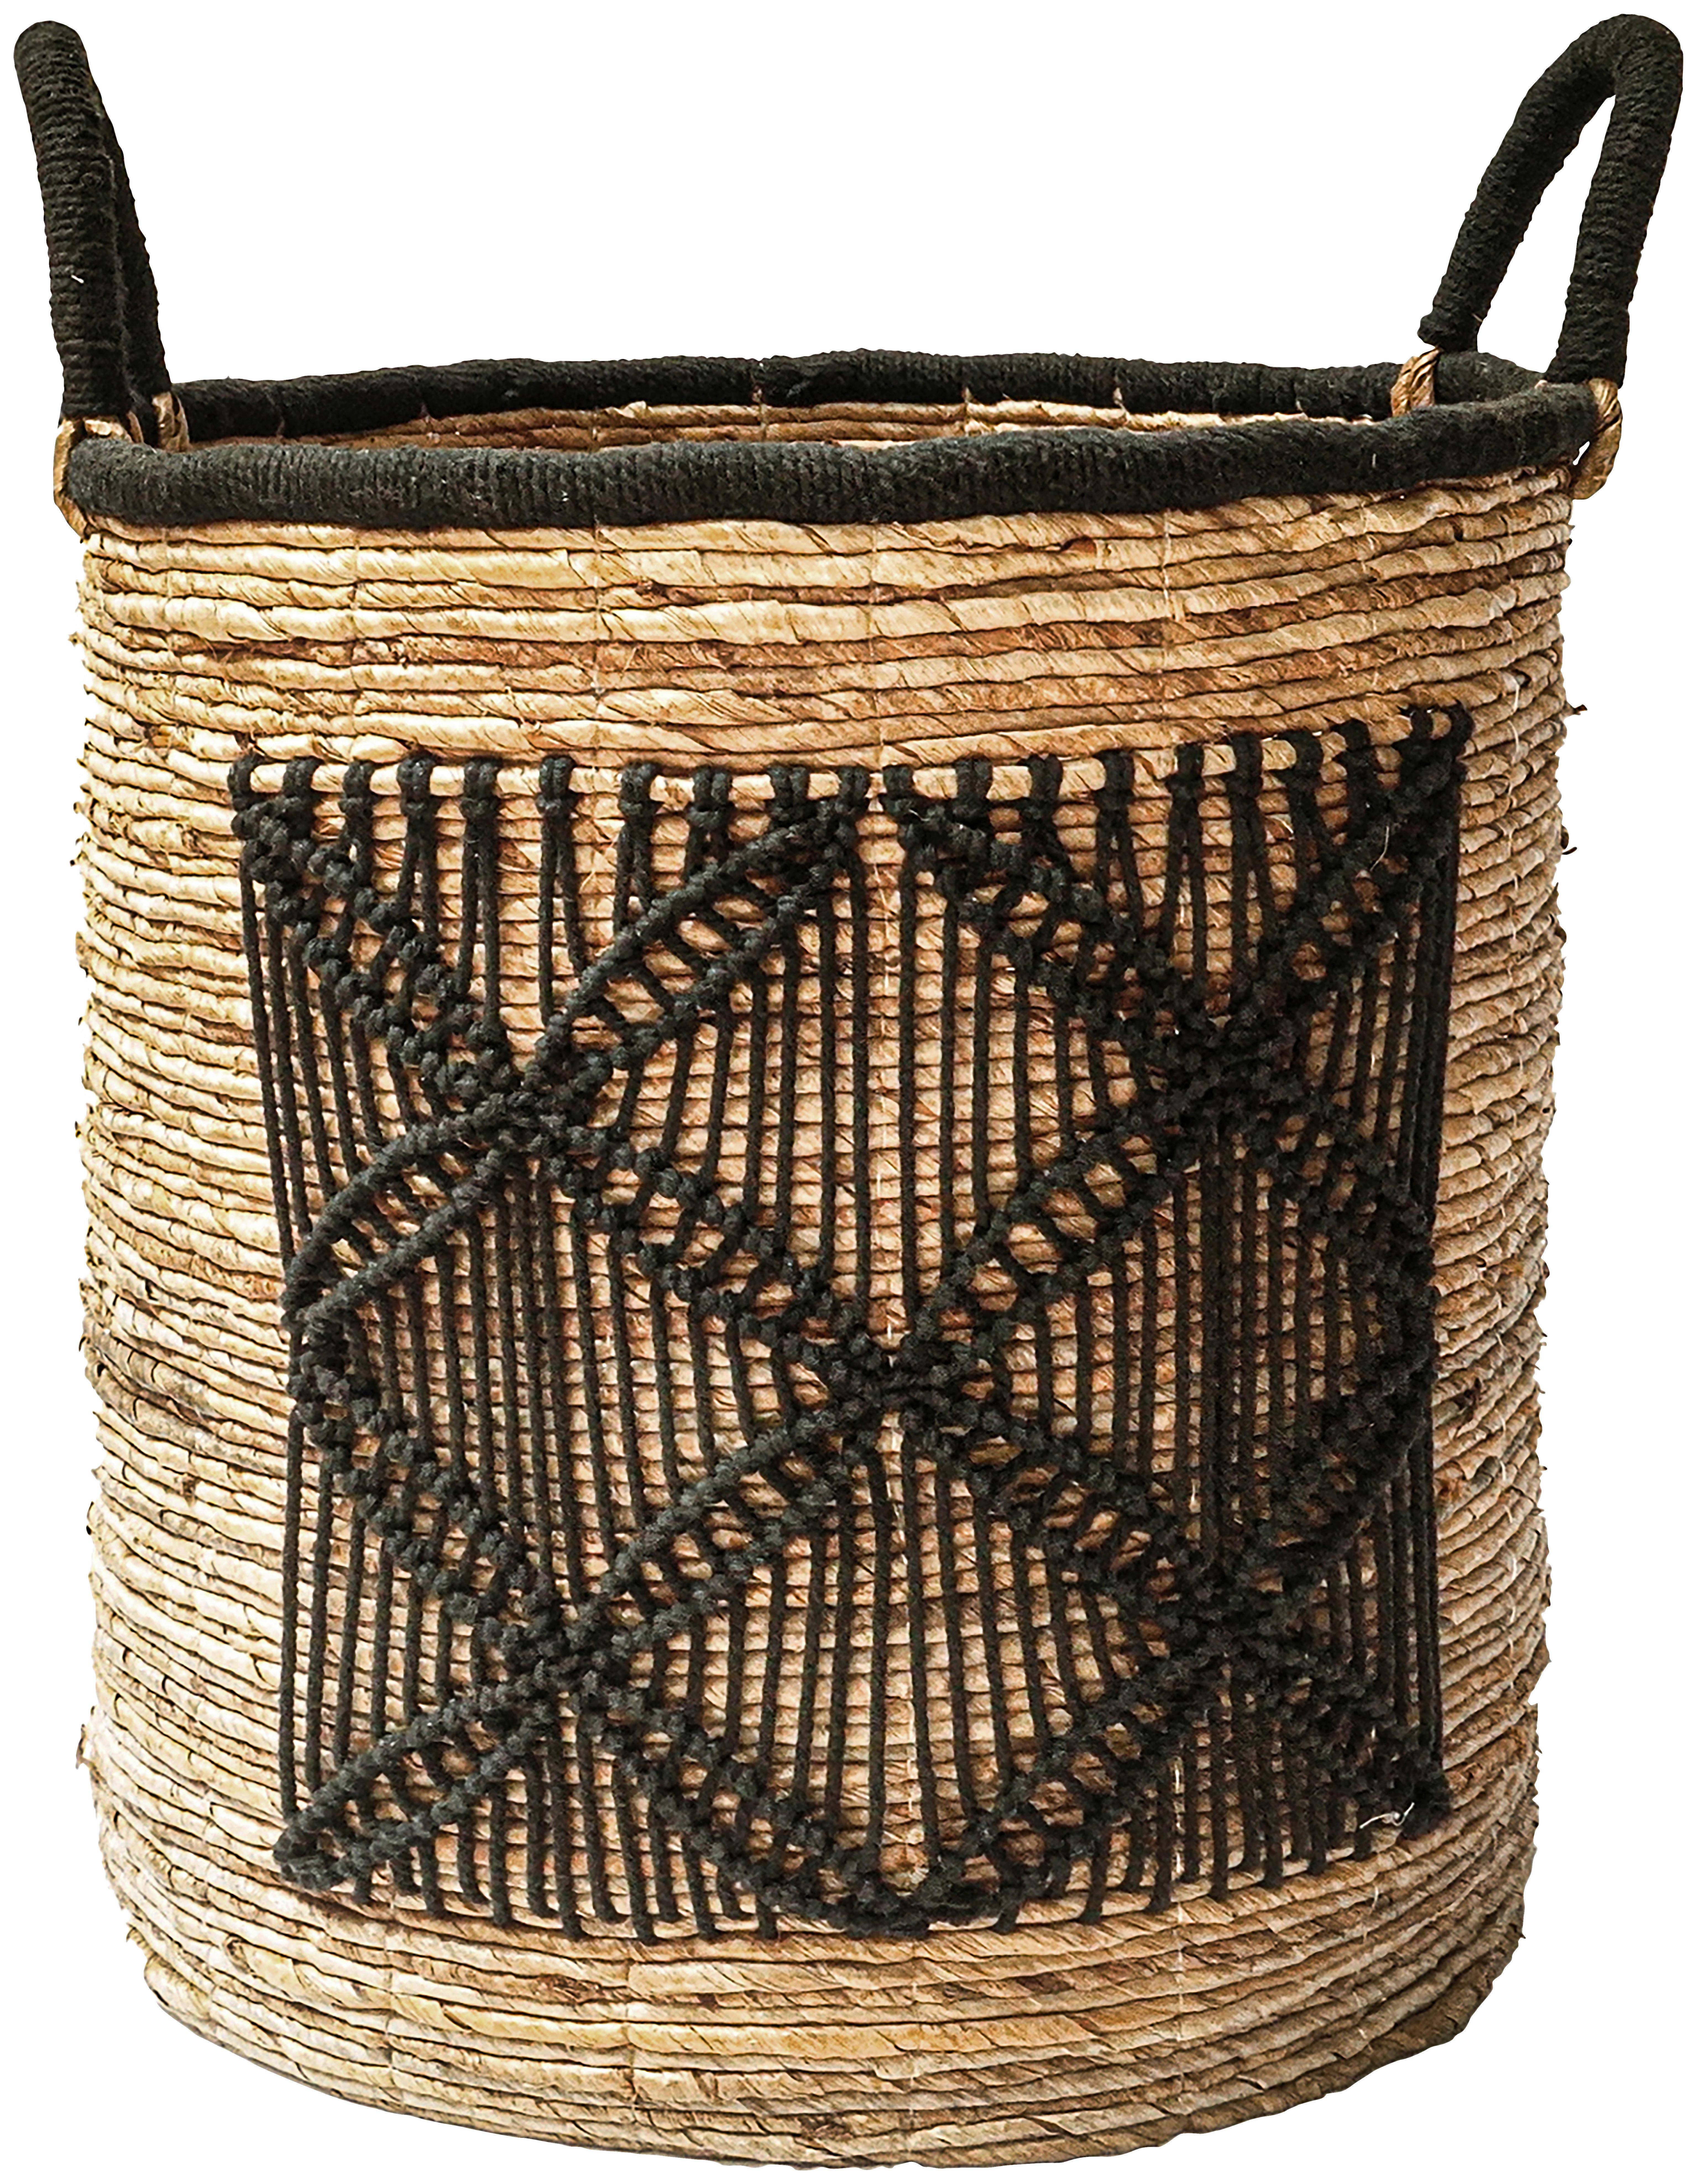 Košík Yuna, 31/35-45 Cm - prírodné farby/čierna, Moderný, textil/prírodné materiály (31/35-45cm) - Premium Living